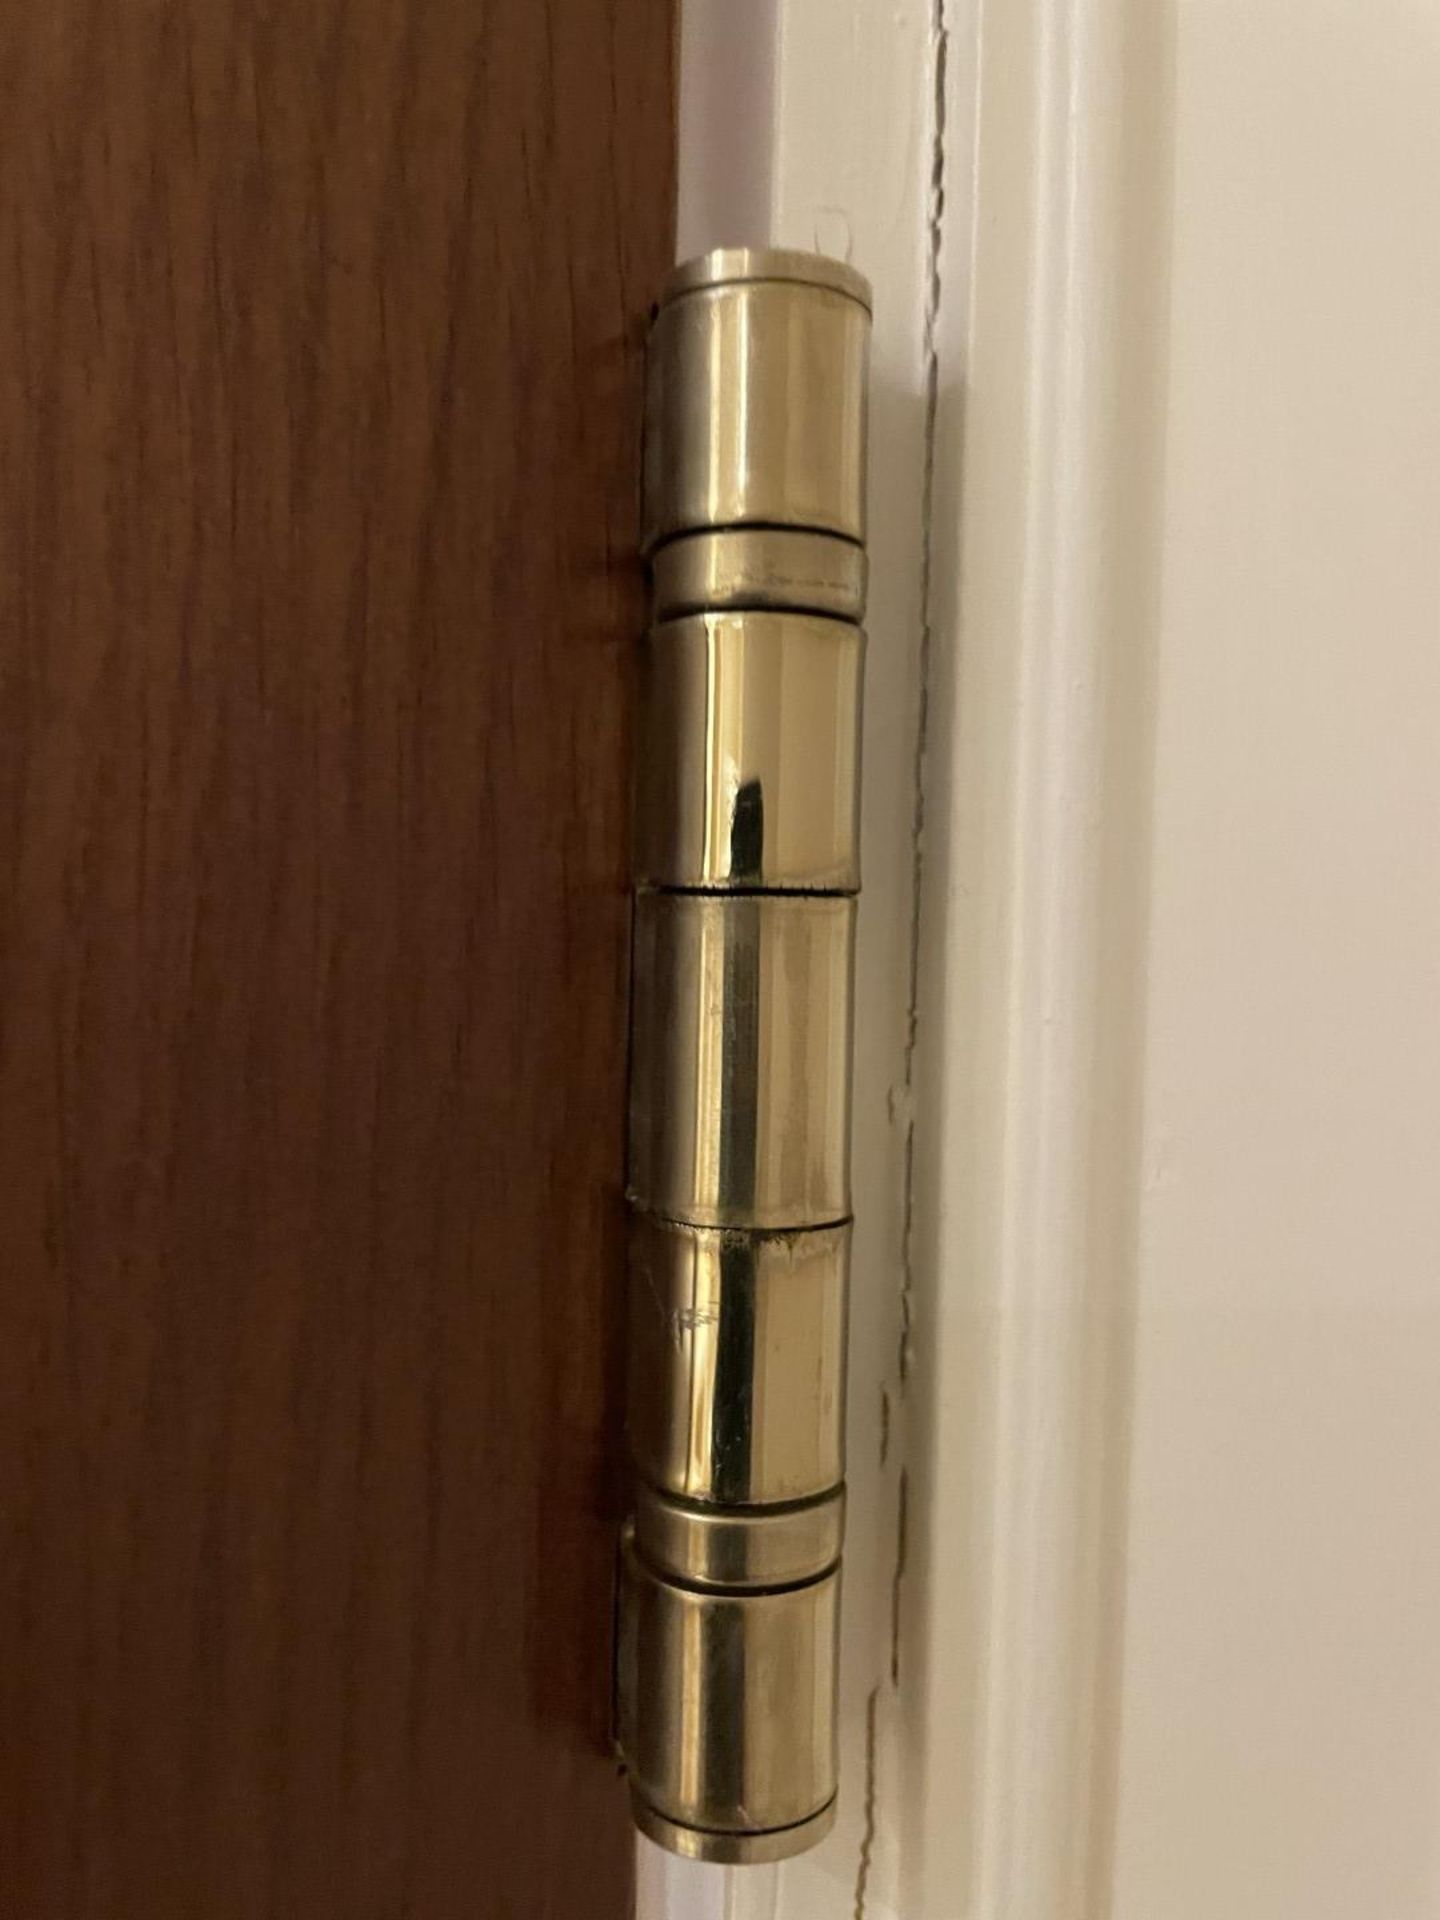 1 x Solid Oak Wooden Lockable Internal Door - Ref: PAN285 / UTIL - CL896 - NO VAT ON THE HAMMER - - Image 7 of 9